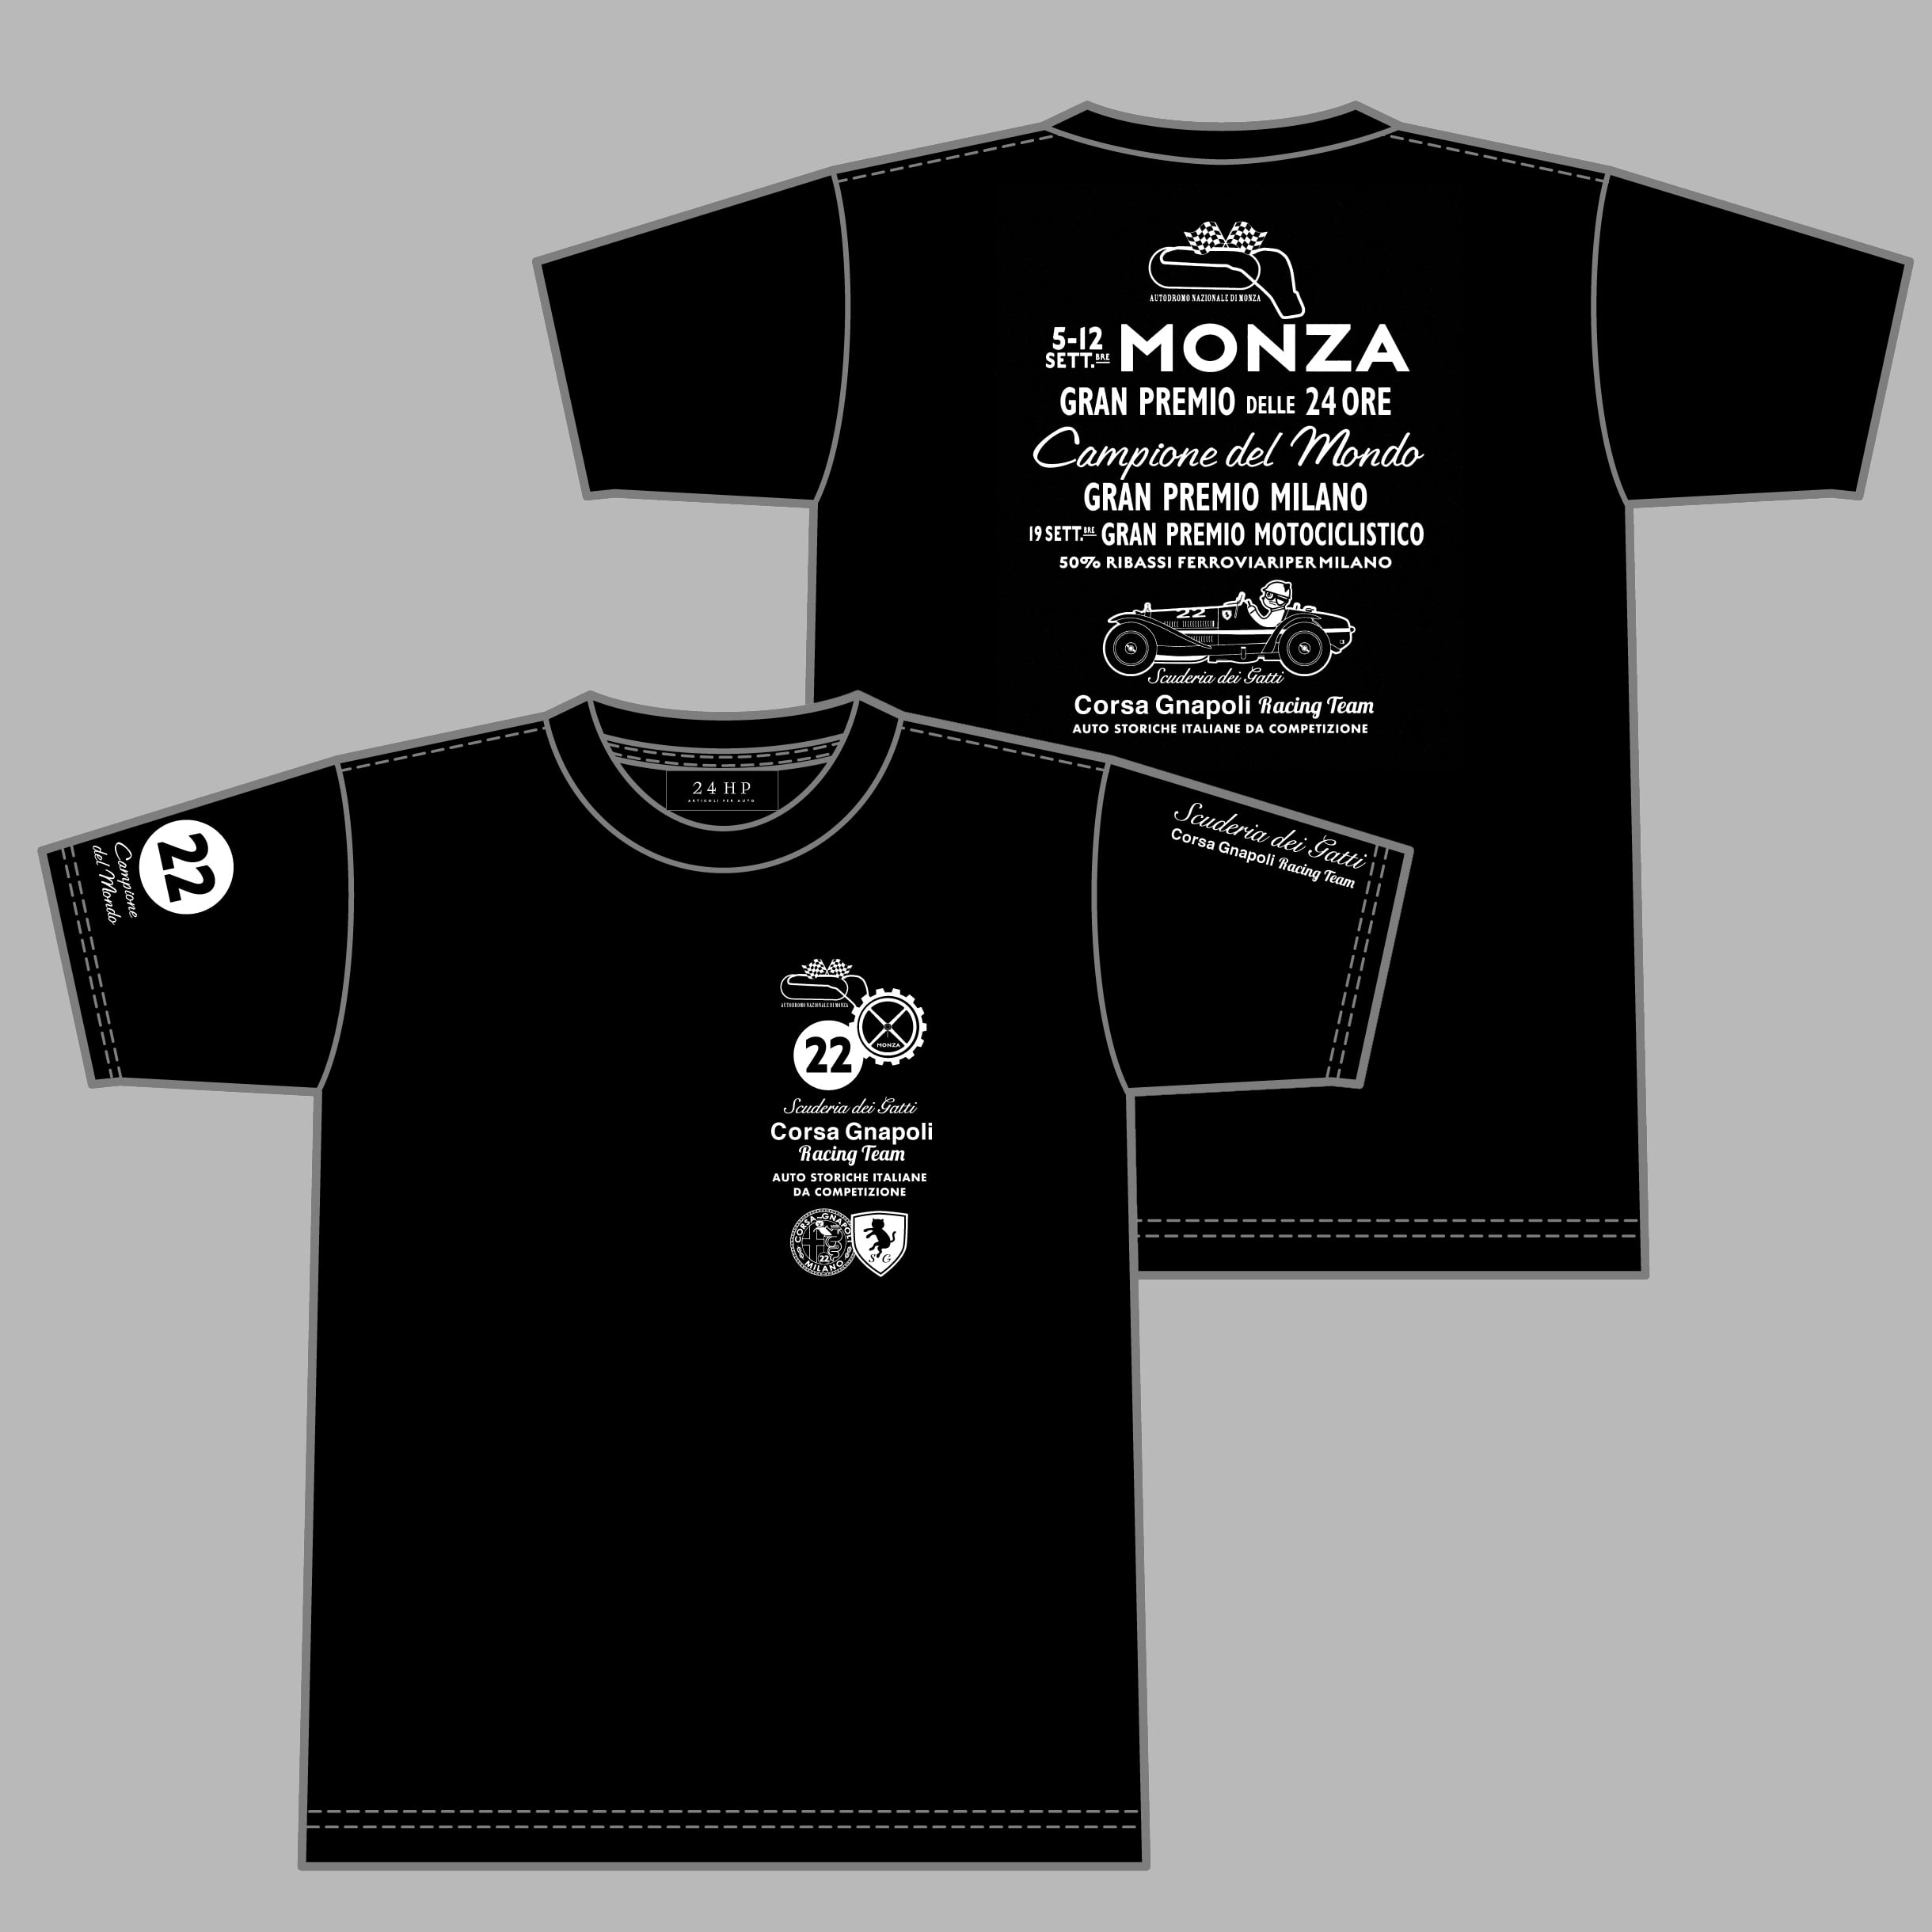 Corsa Gnapoli Monza T コルサ・ニャポリ モンツァTシャツ | 24HP